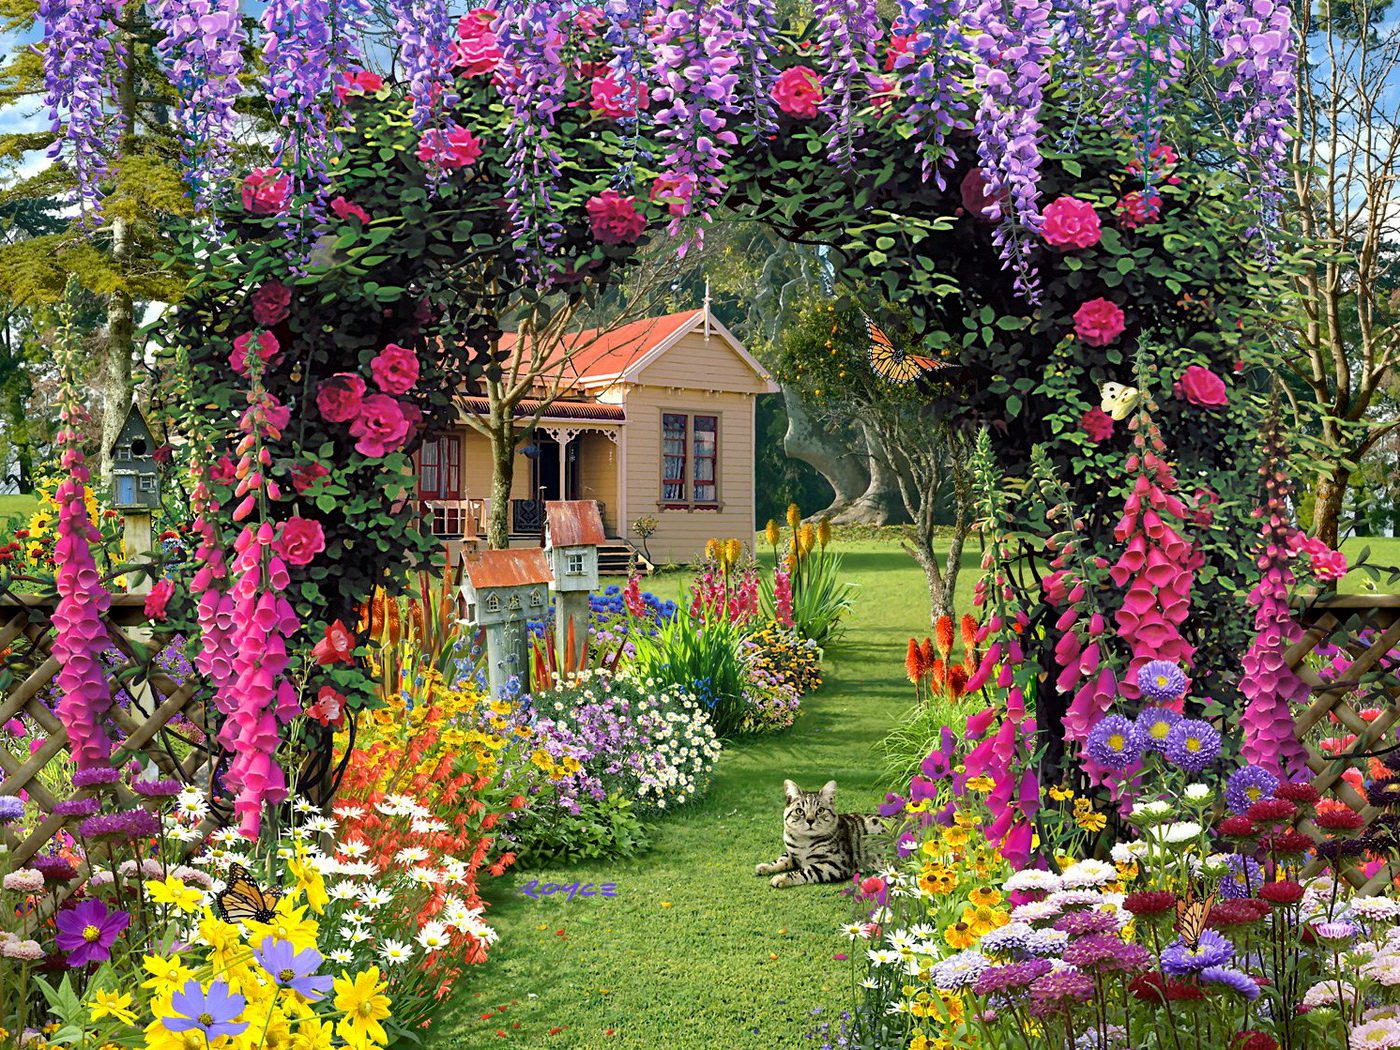 Wallpapers Fair: Luxurious Flower Garden HD Widescreen Wallpaper